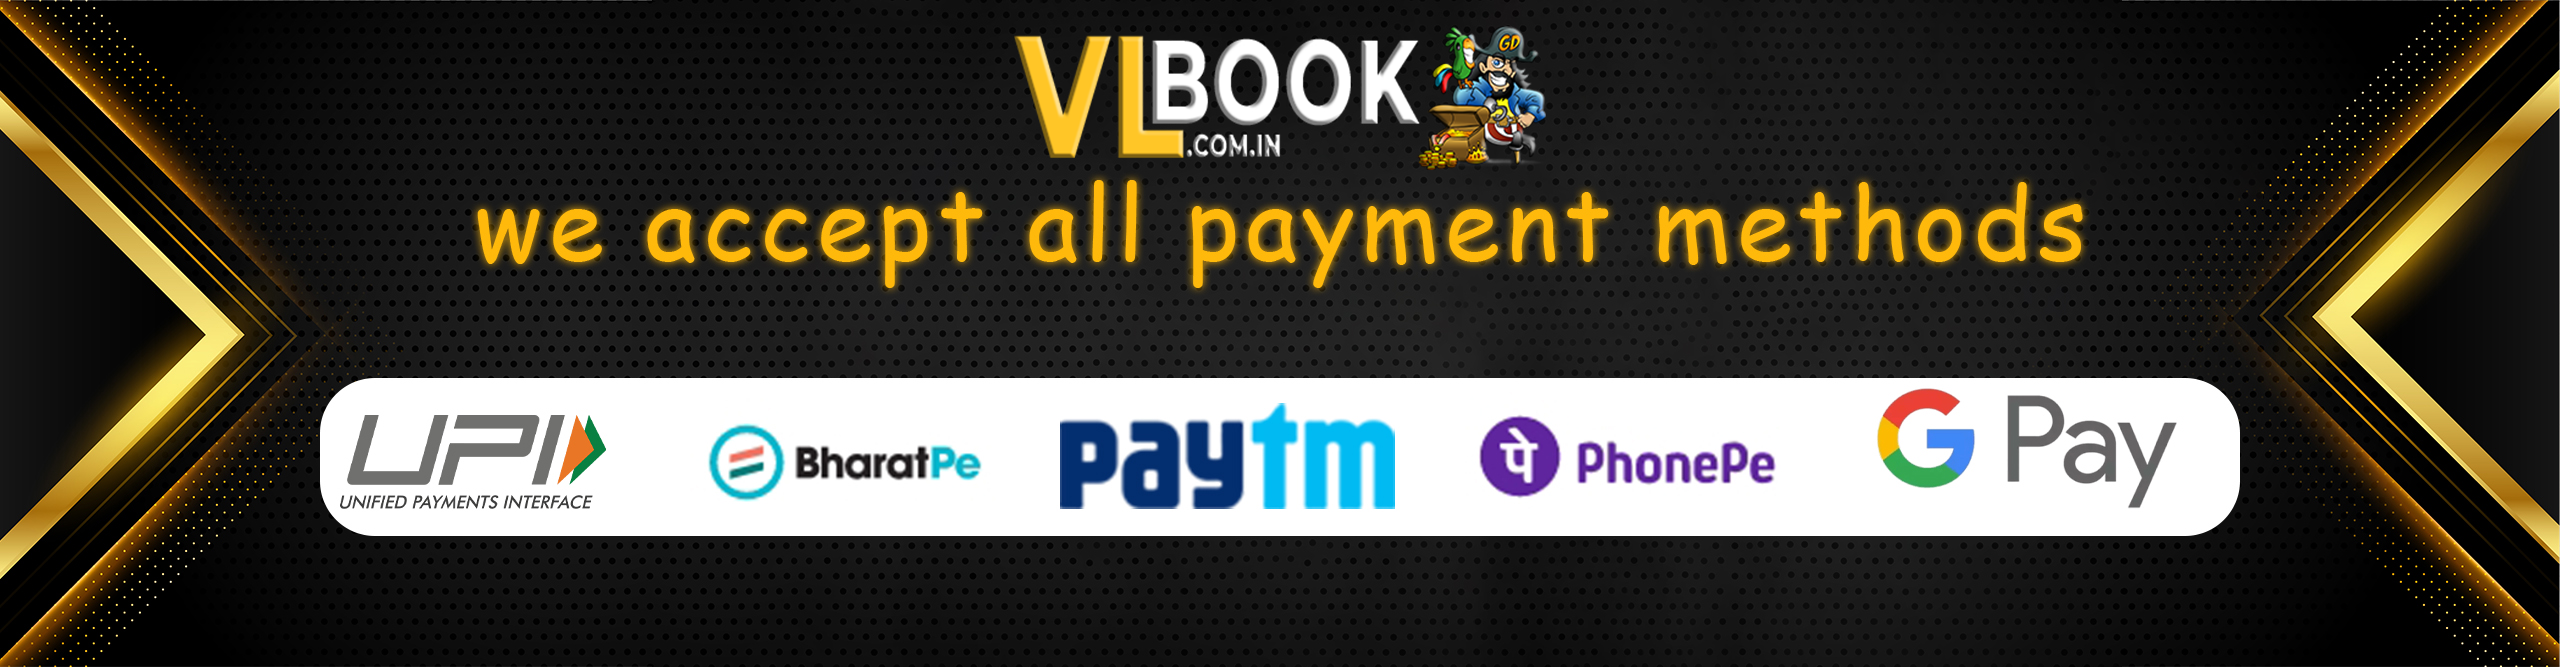 Vl Book Sign up, Vlbook Sign up, Vlbook.Co Sign up, Vlbook co Sign up, Vlbook com Sign up